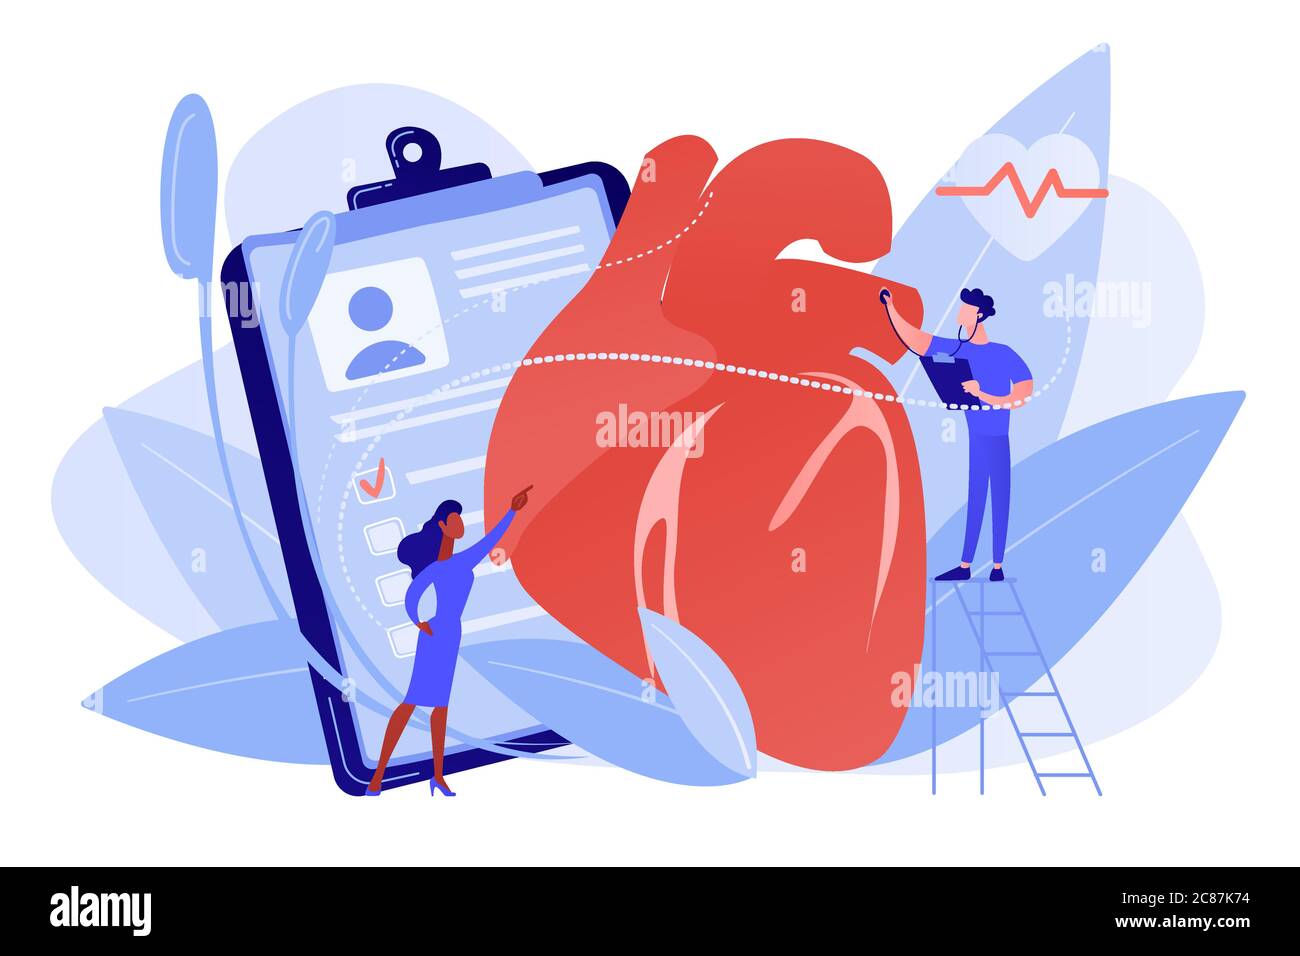 Illustrazione del vettore di concetto di cardiopatia ischemica. Illustrazione Vettoriale